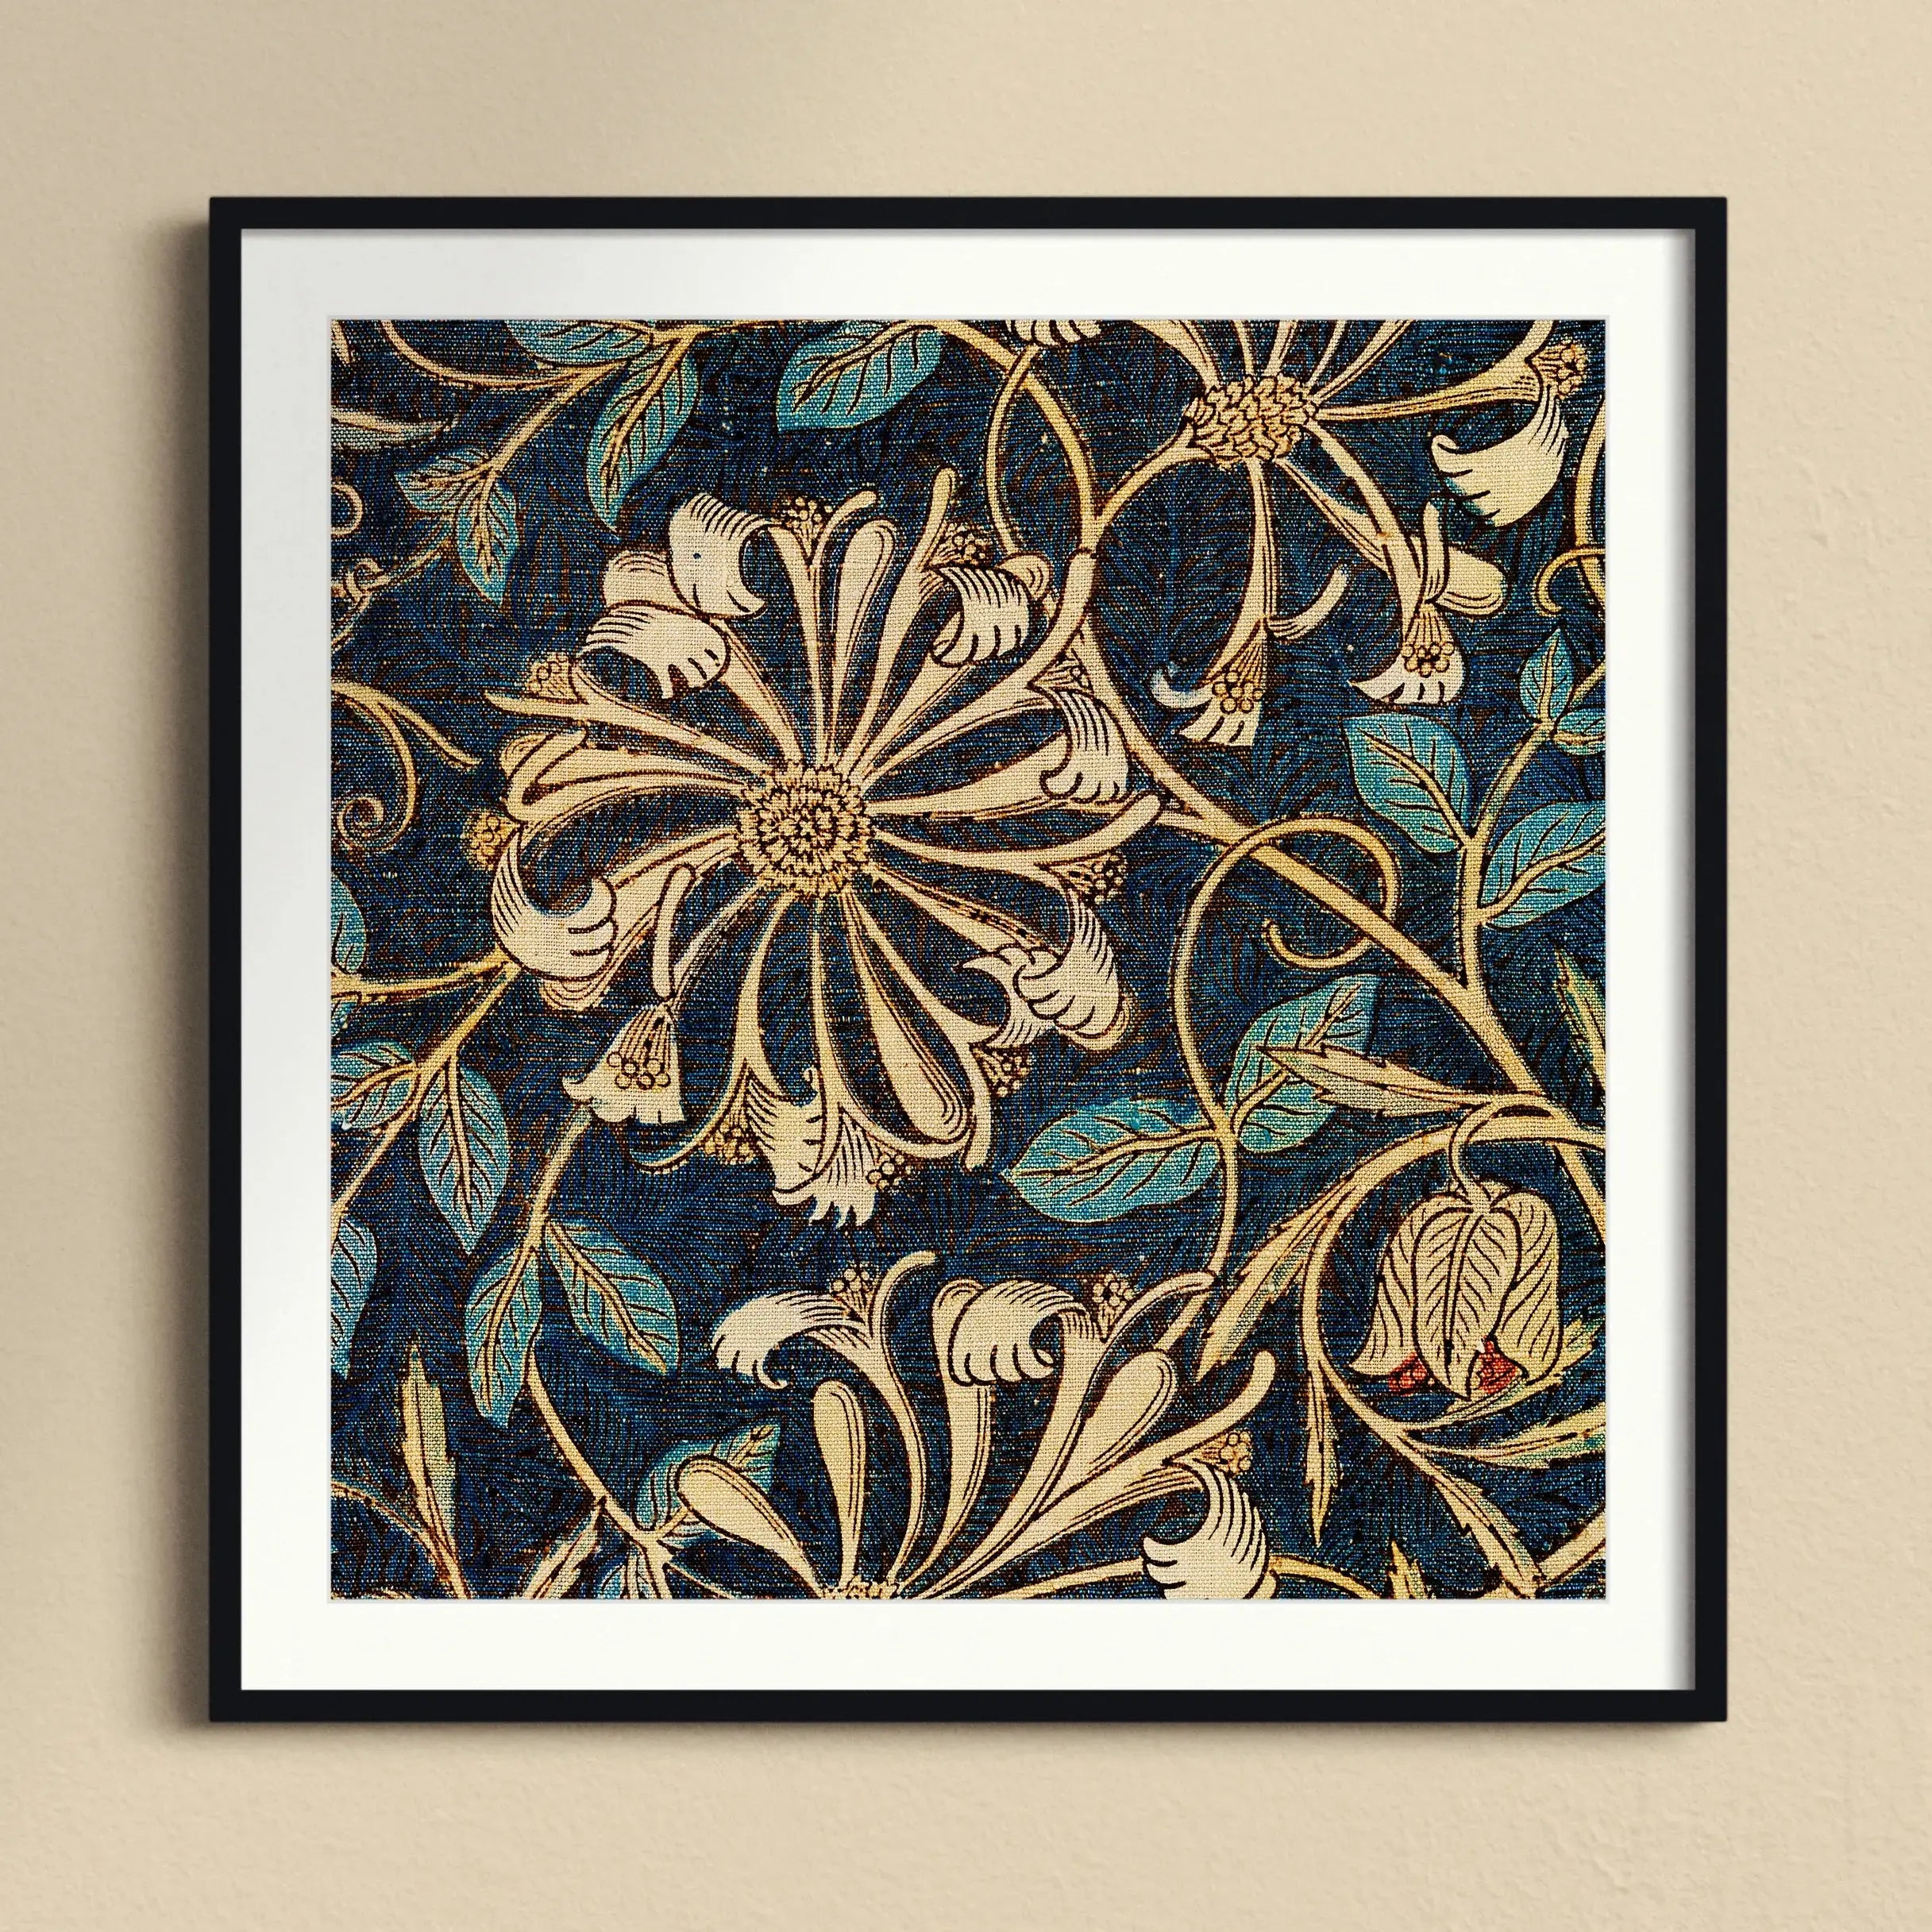 Honeysuckle - William Morris Floral Framed Art Print - 12’x12’ / Black Frame - Posters Prints & Visual Artwork